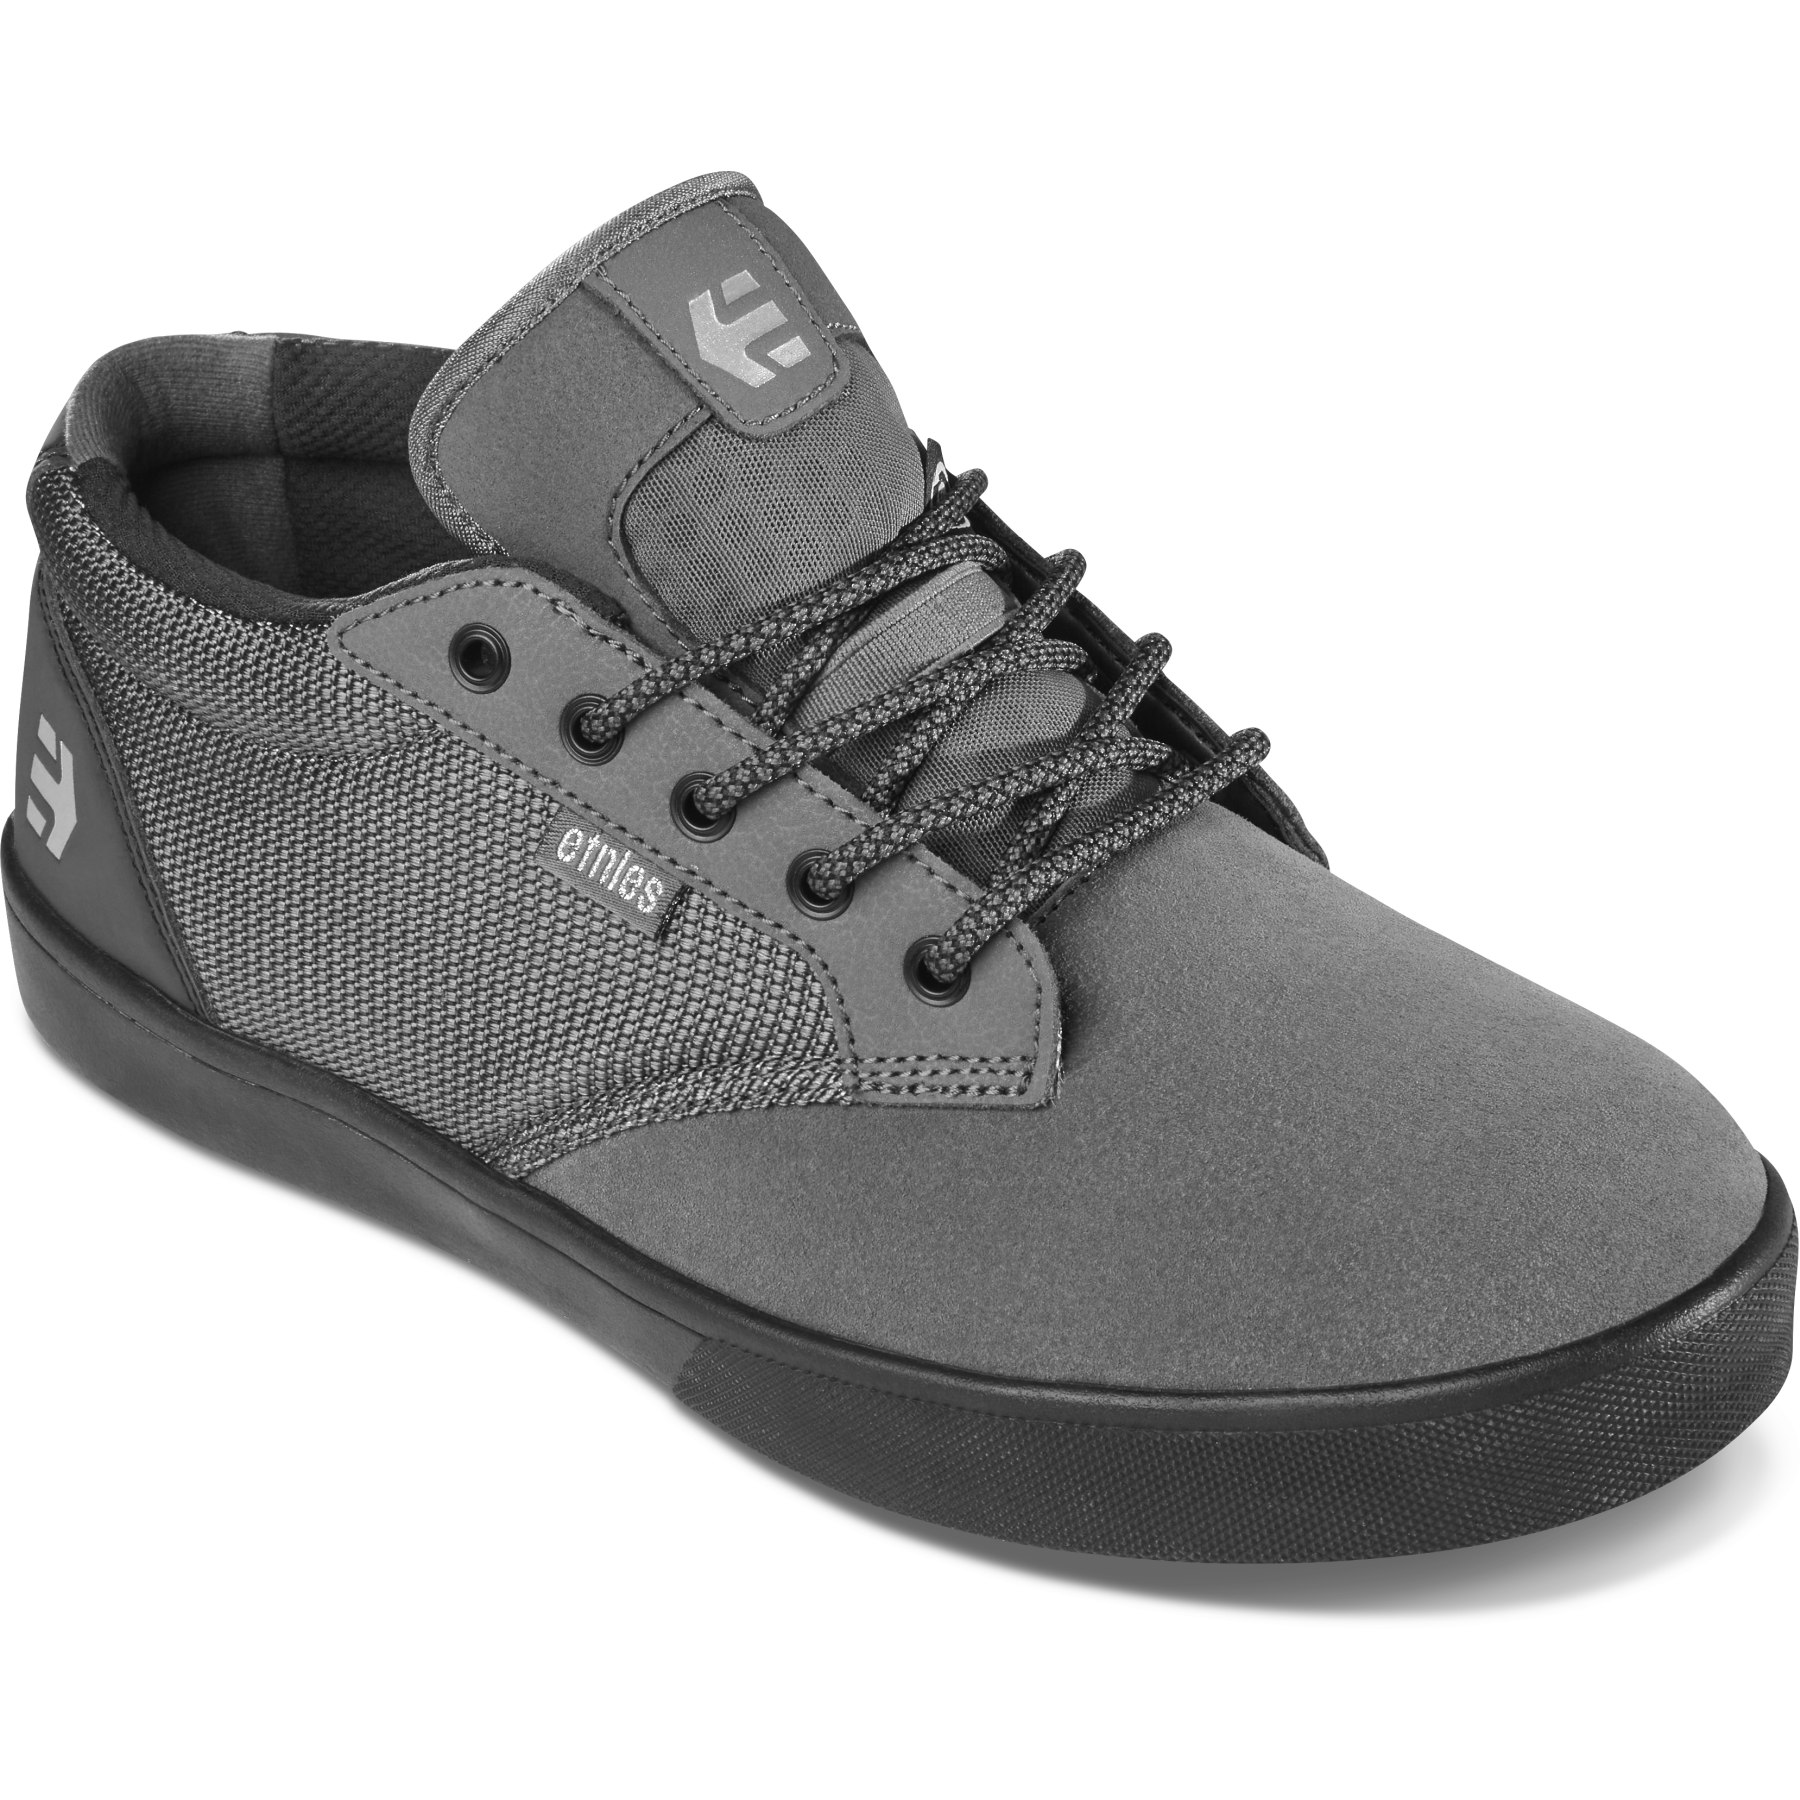 Produktbild von etnies Jameson Mid Crank MTB Schuhe - grau/schwarz/silbern